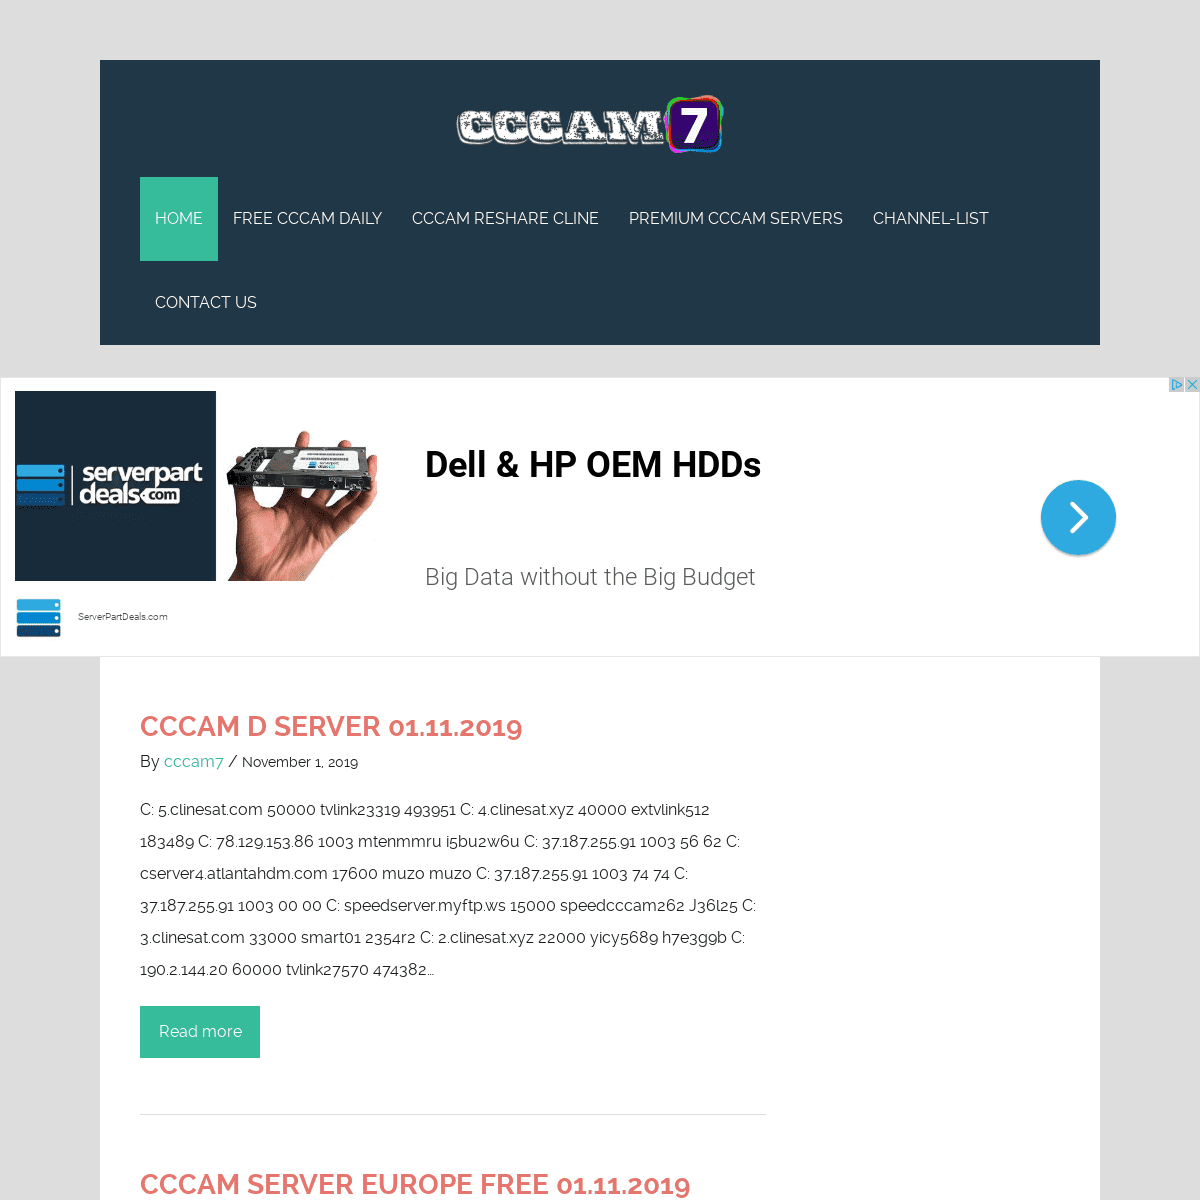 A complete backup of cccam7.com